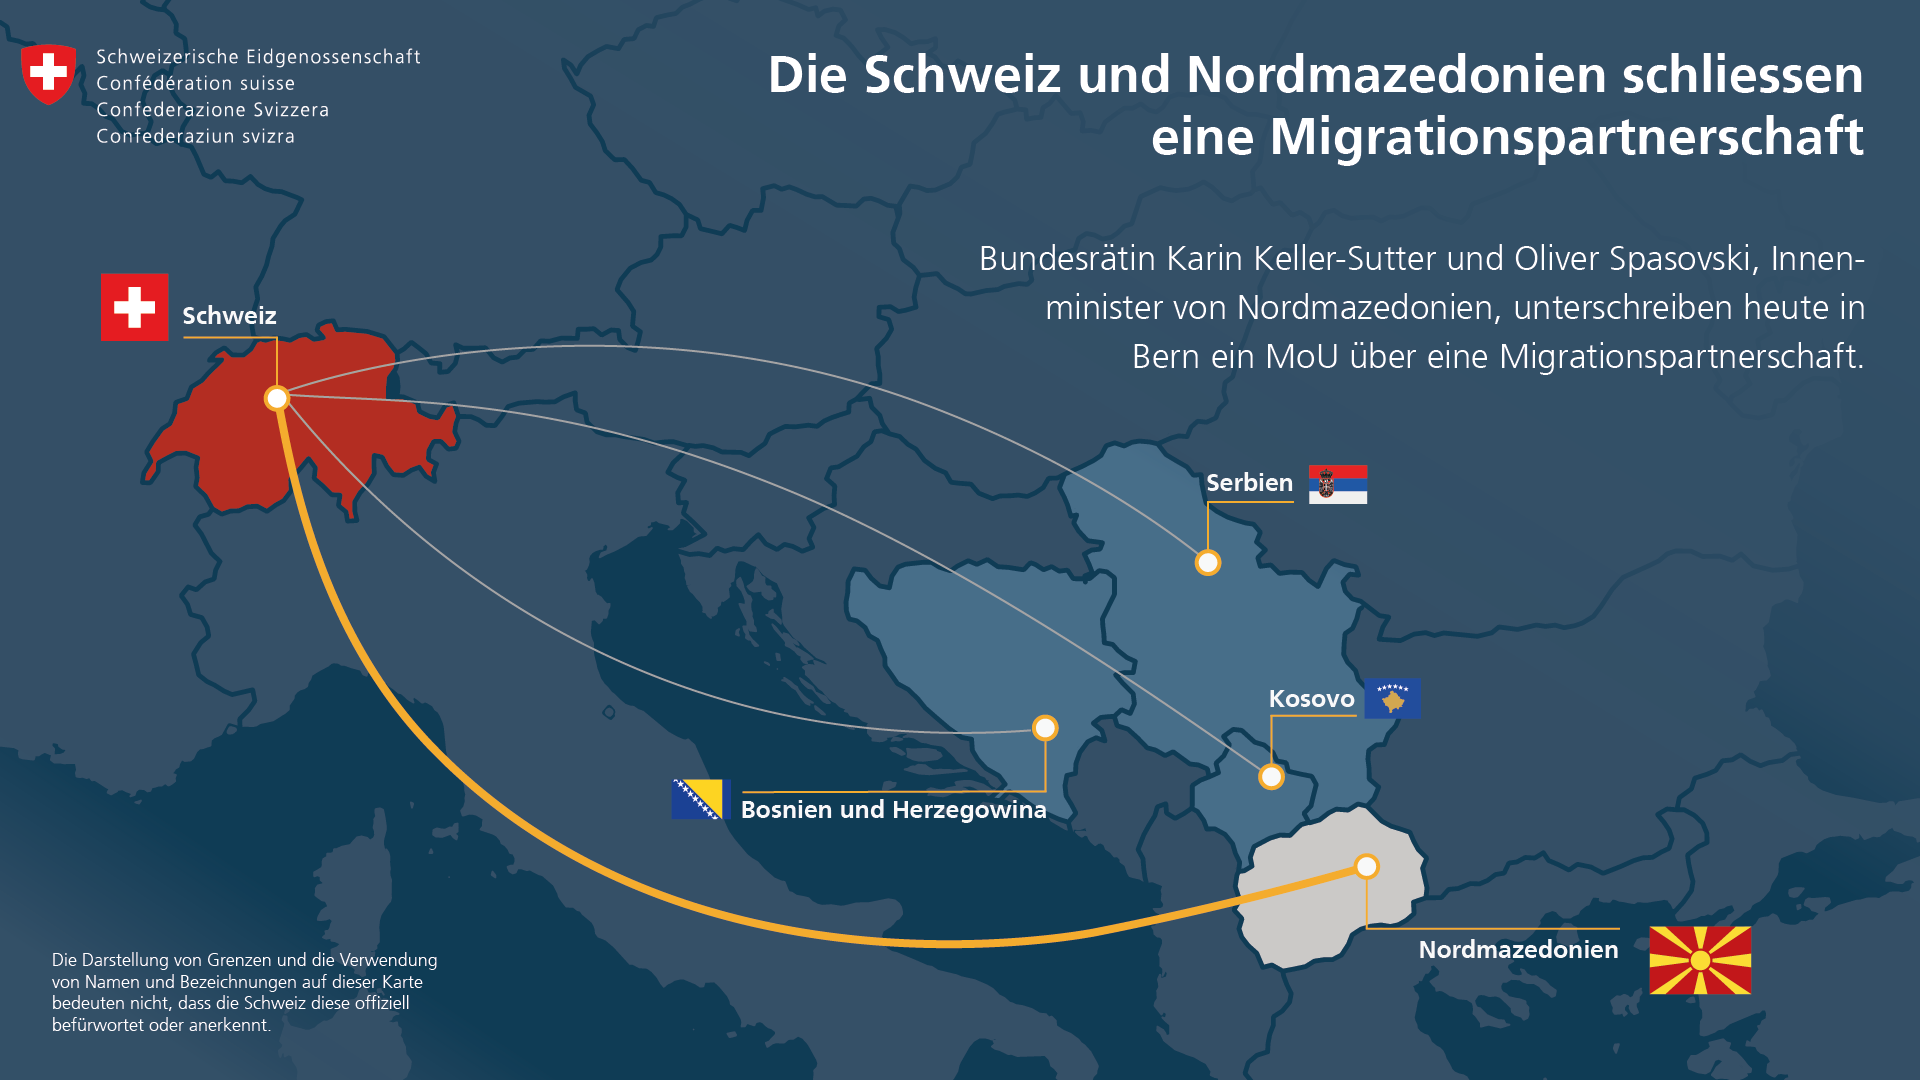 Infografik: Die Schweiz hat mit Bosnien und Herzegowina, Serbien, Kosovo und neu auch mit Nordmazedonien Migrationspartnerschaften.